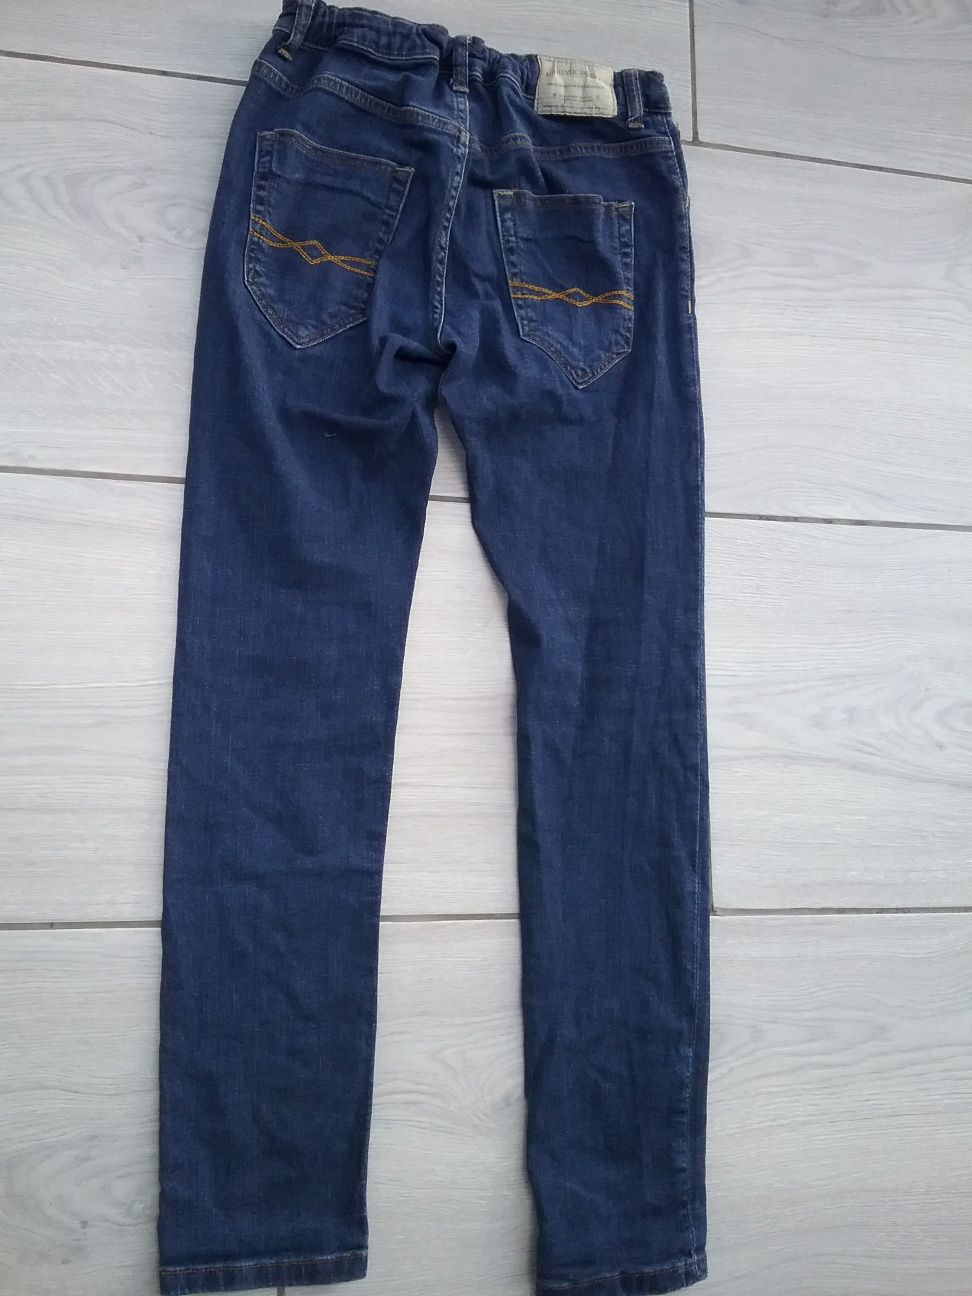 Spodnie jeansowe dla chłopca Zara rozm.164